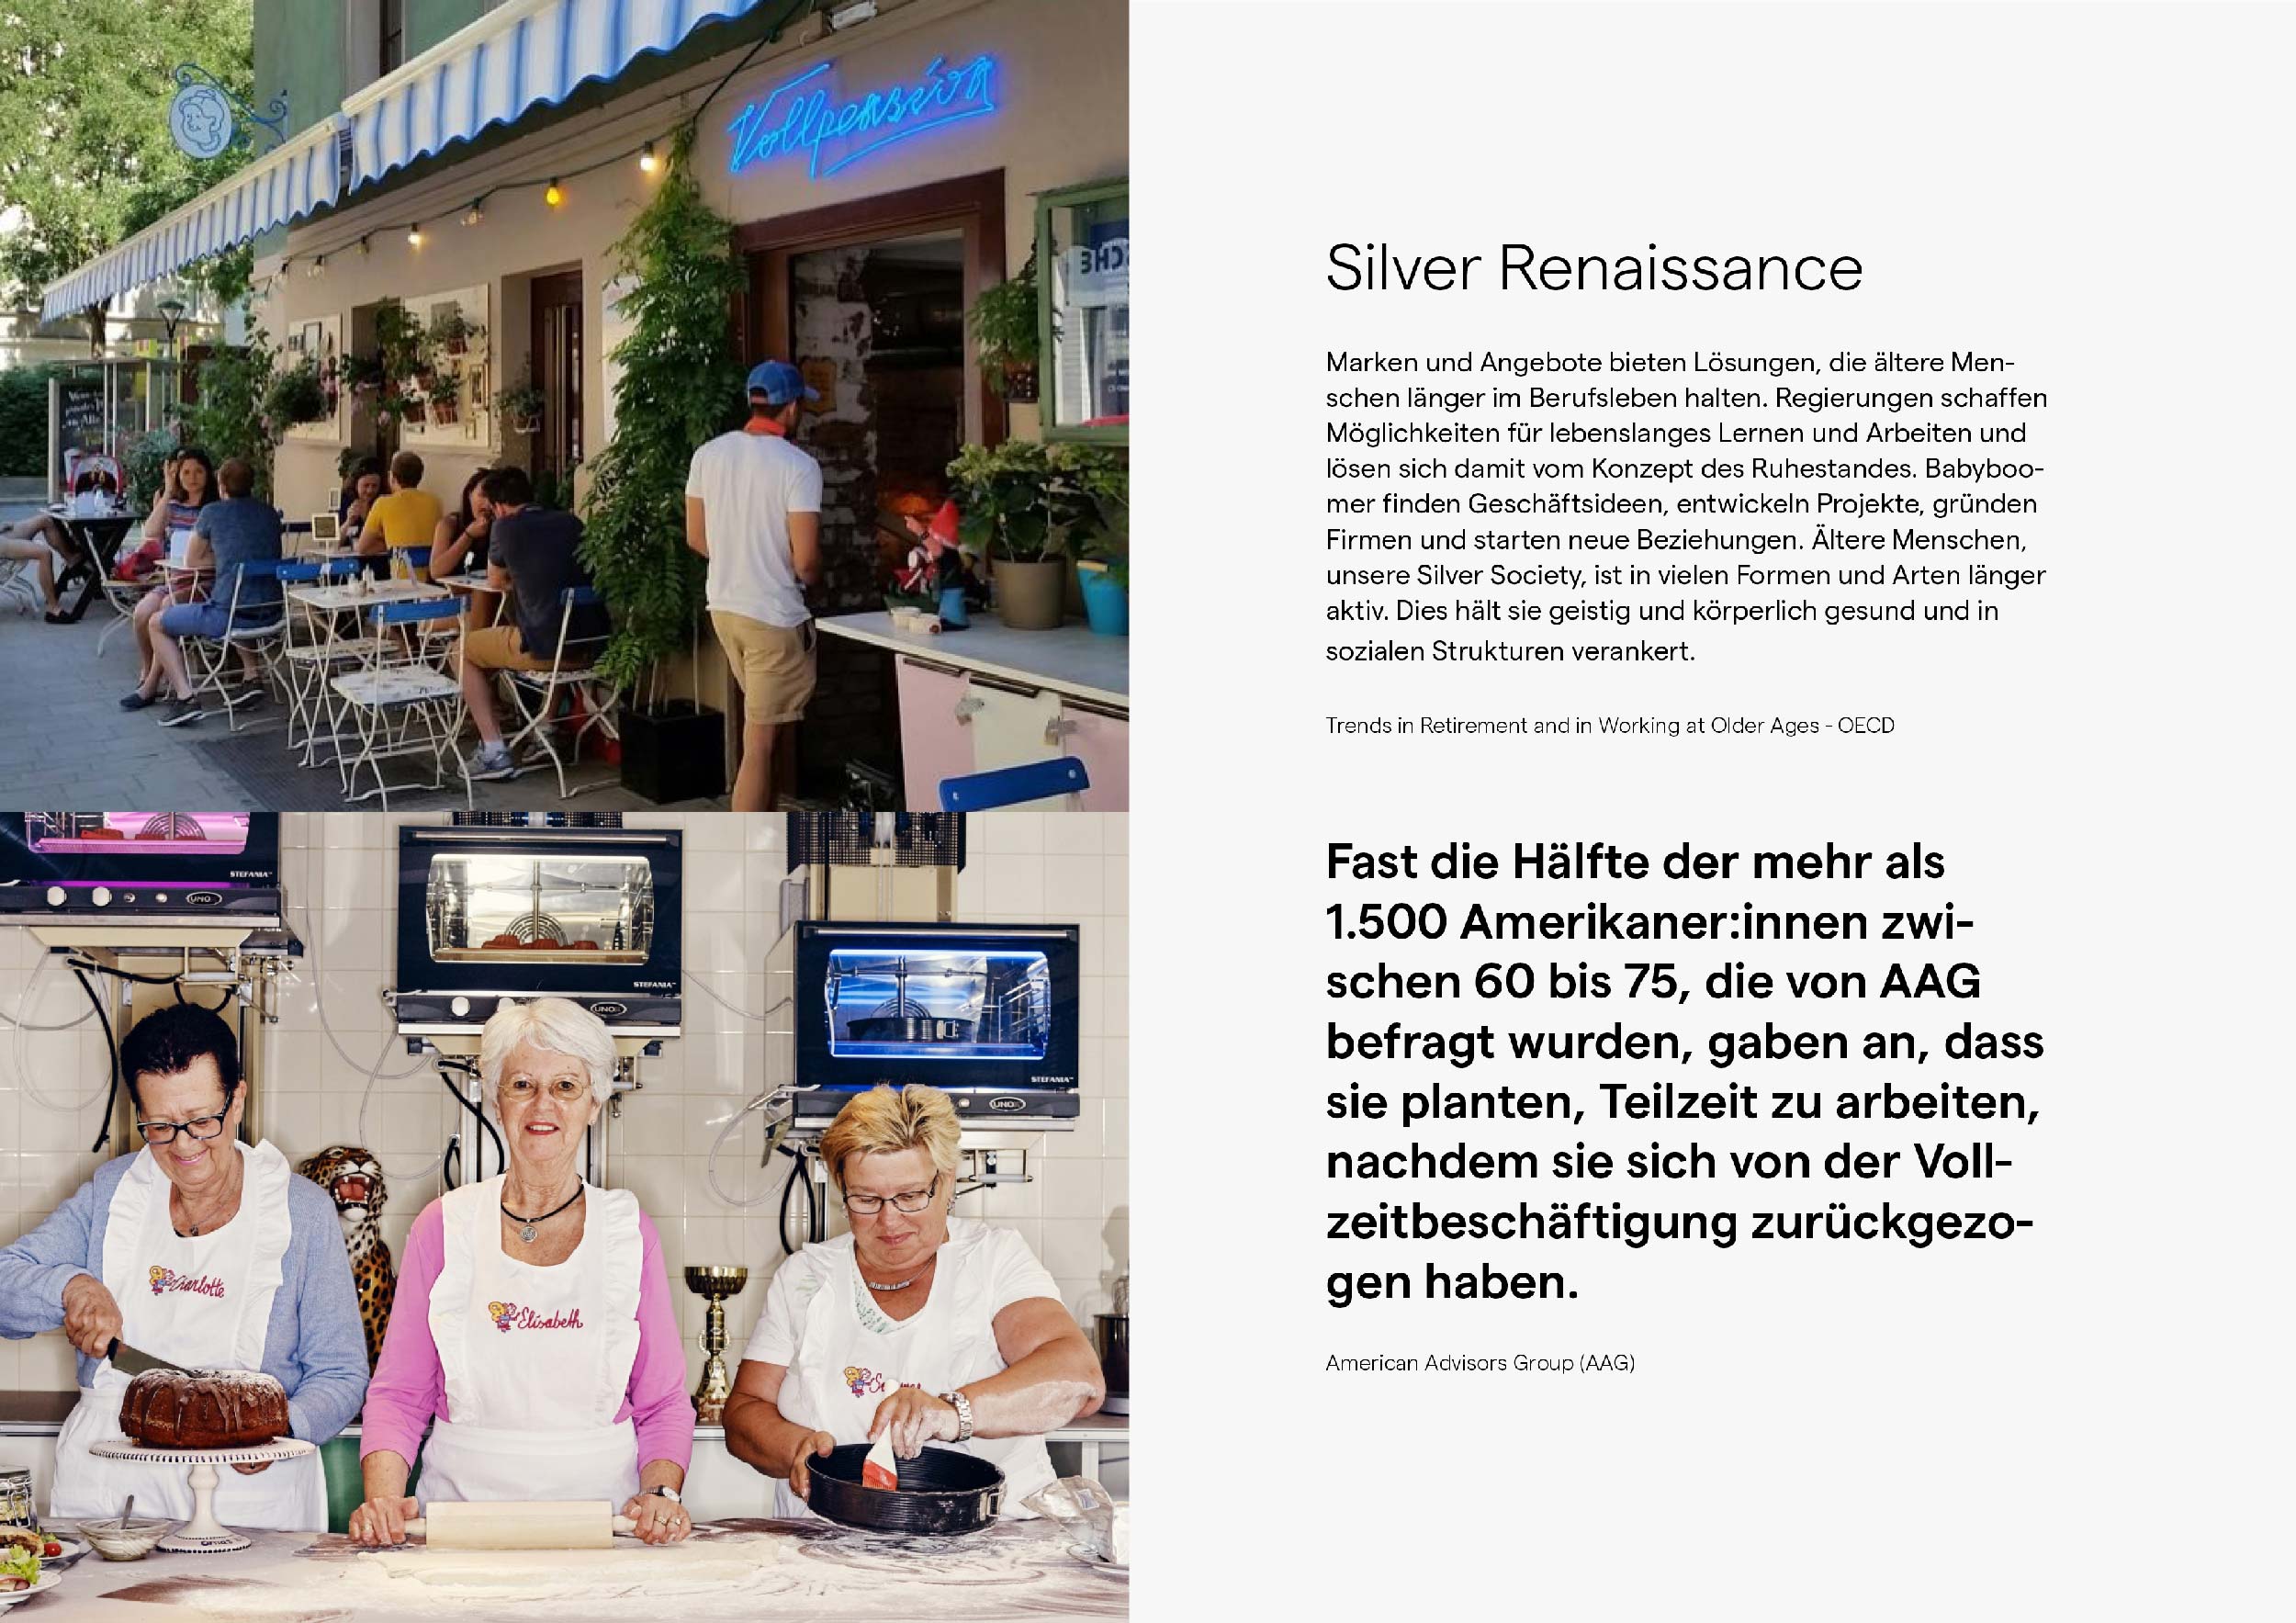 Silver Renaissance: Marken und Angebote bieten Lösungen, die ältere Menschen länger im Berufsleben halten.